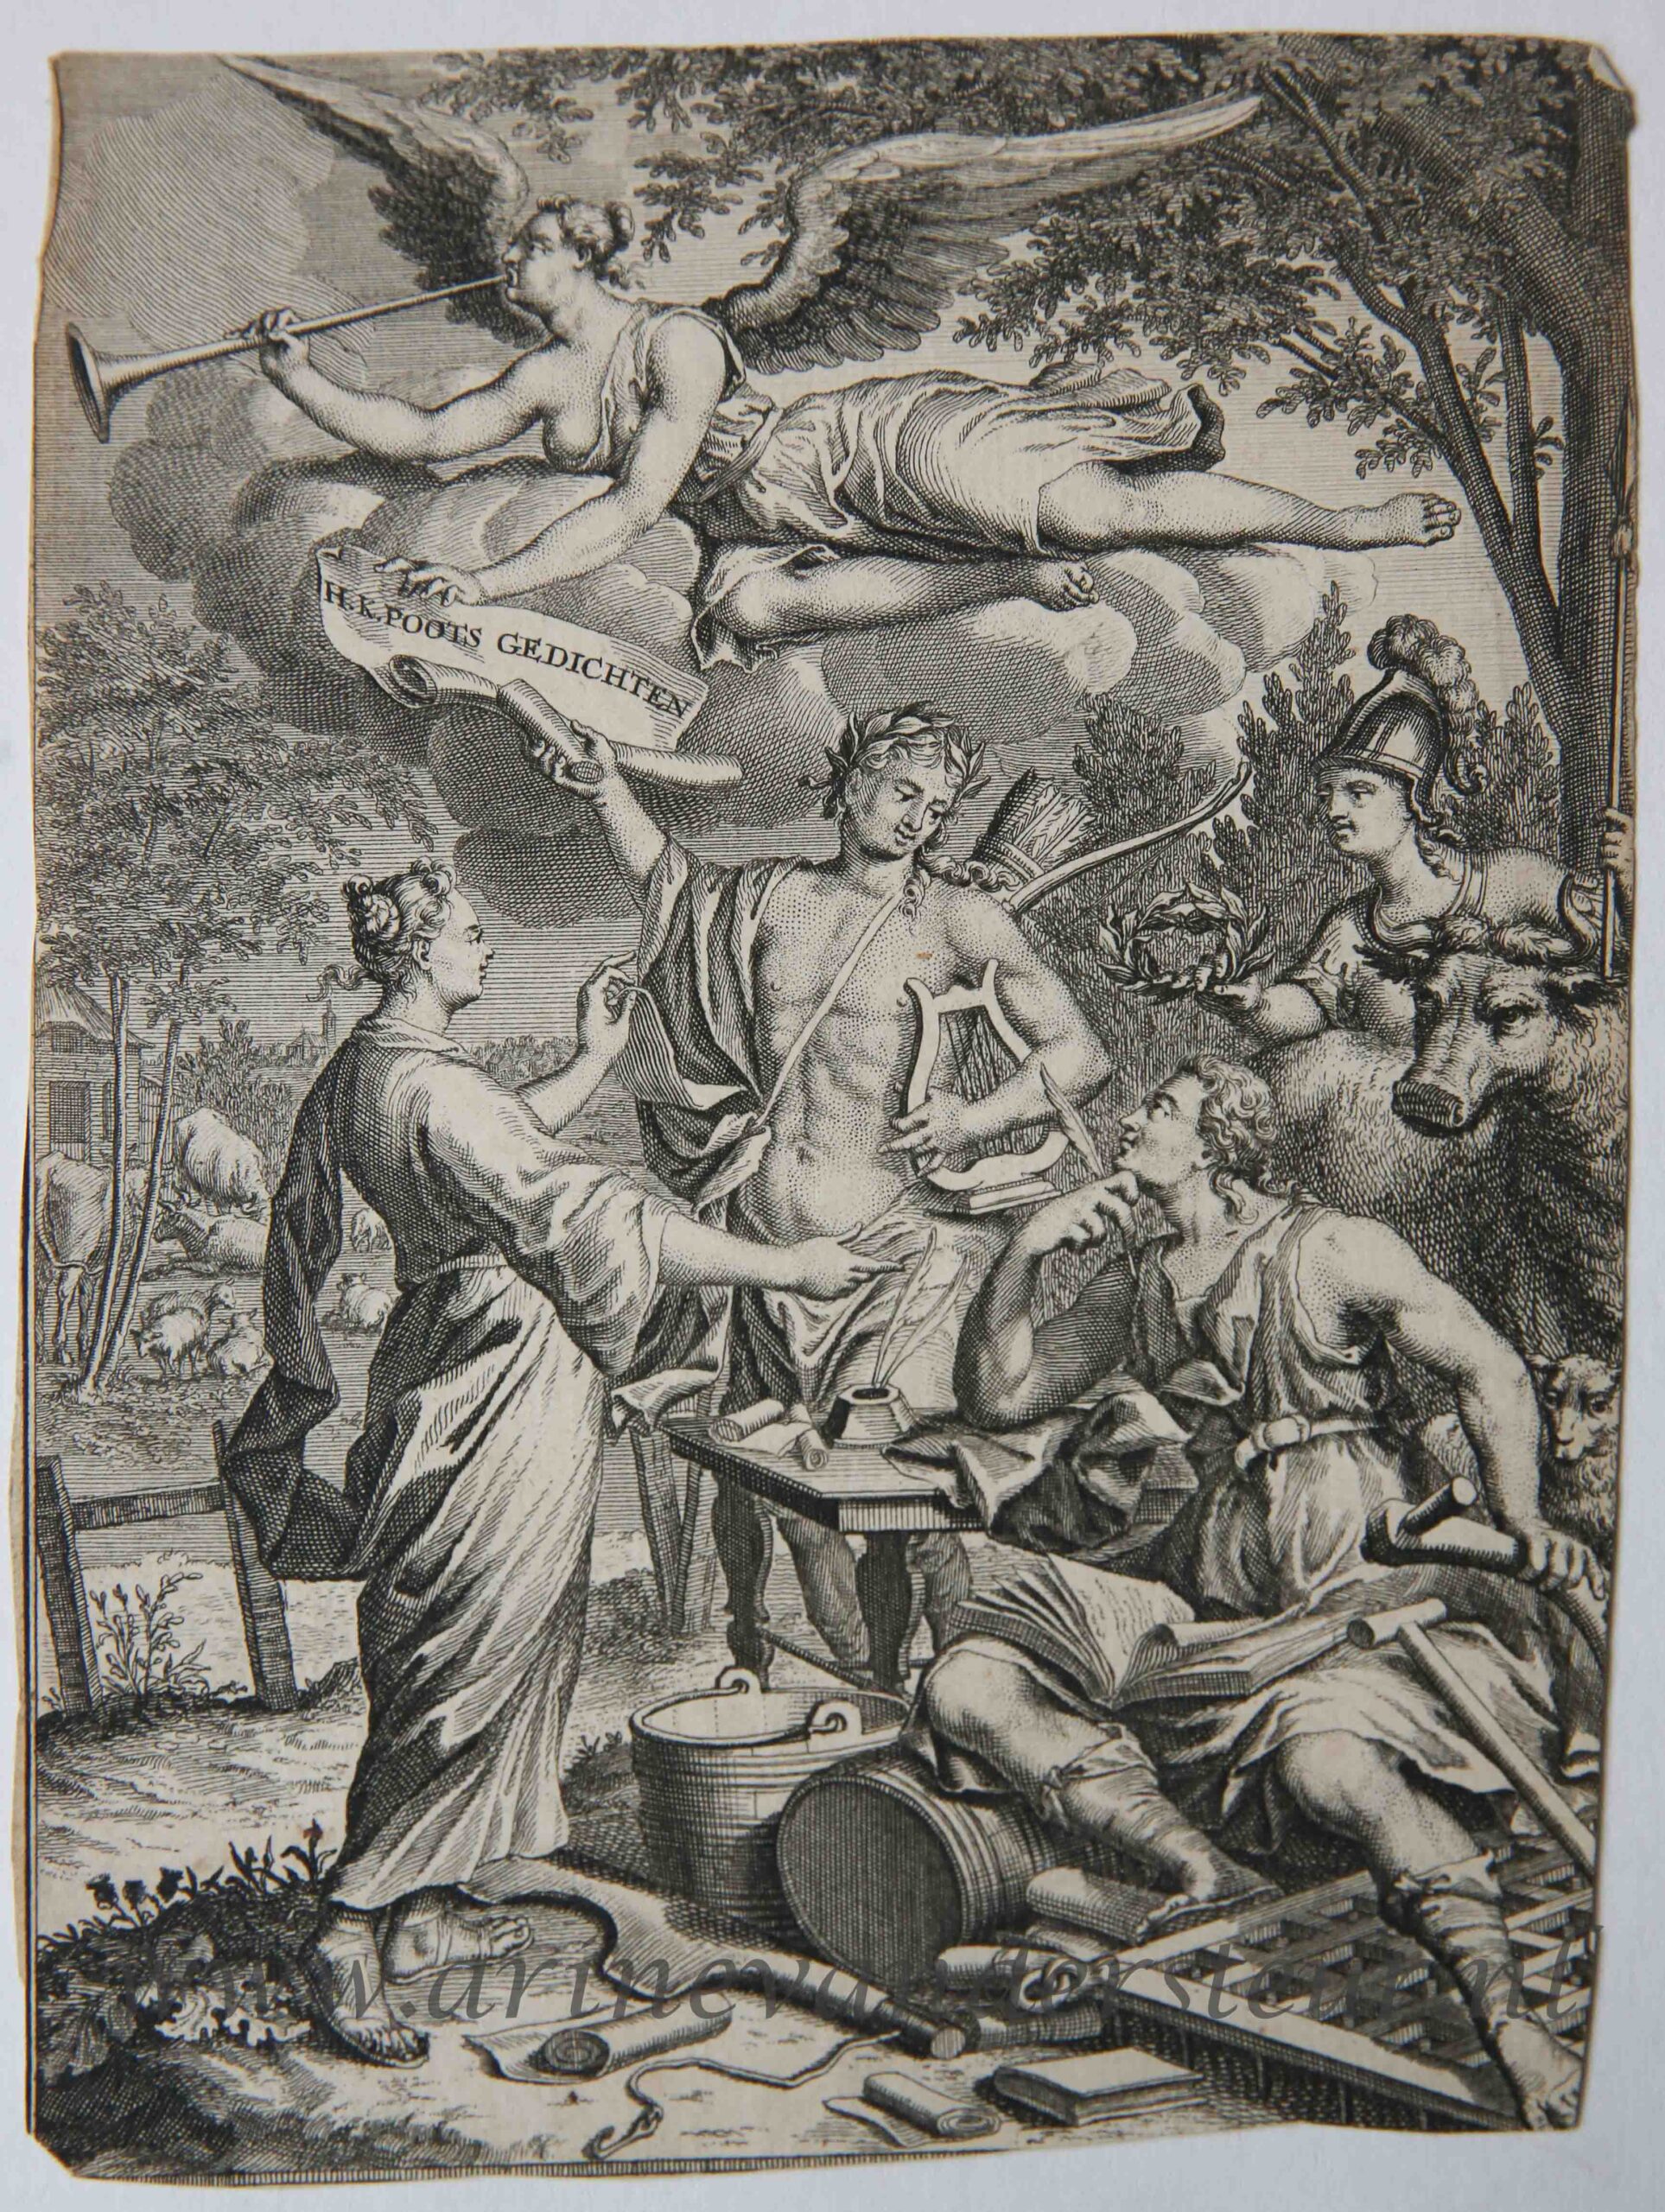 [Antique title page, 1722] GEDICHTEN, published 1722, 1 p.